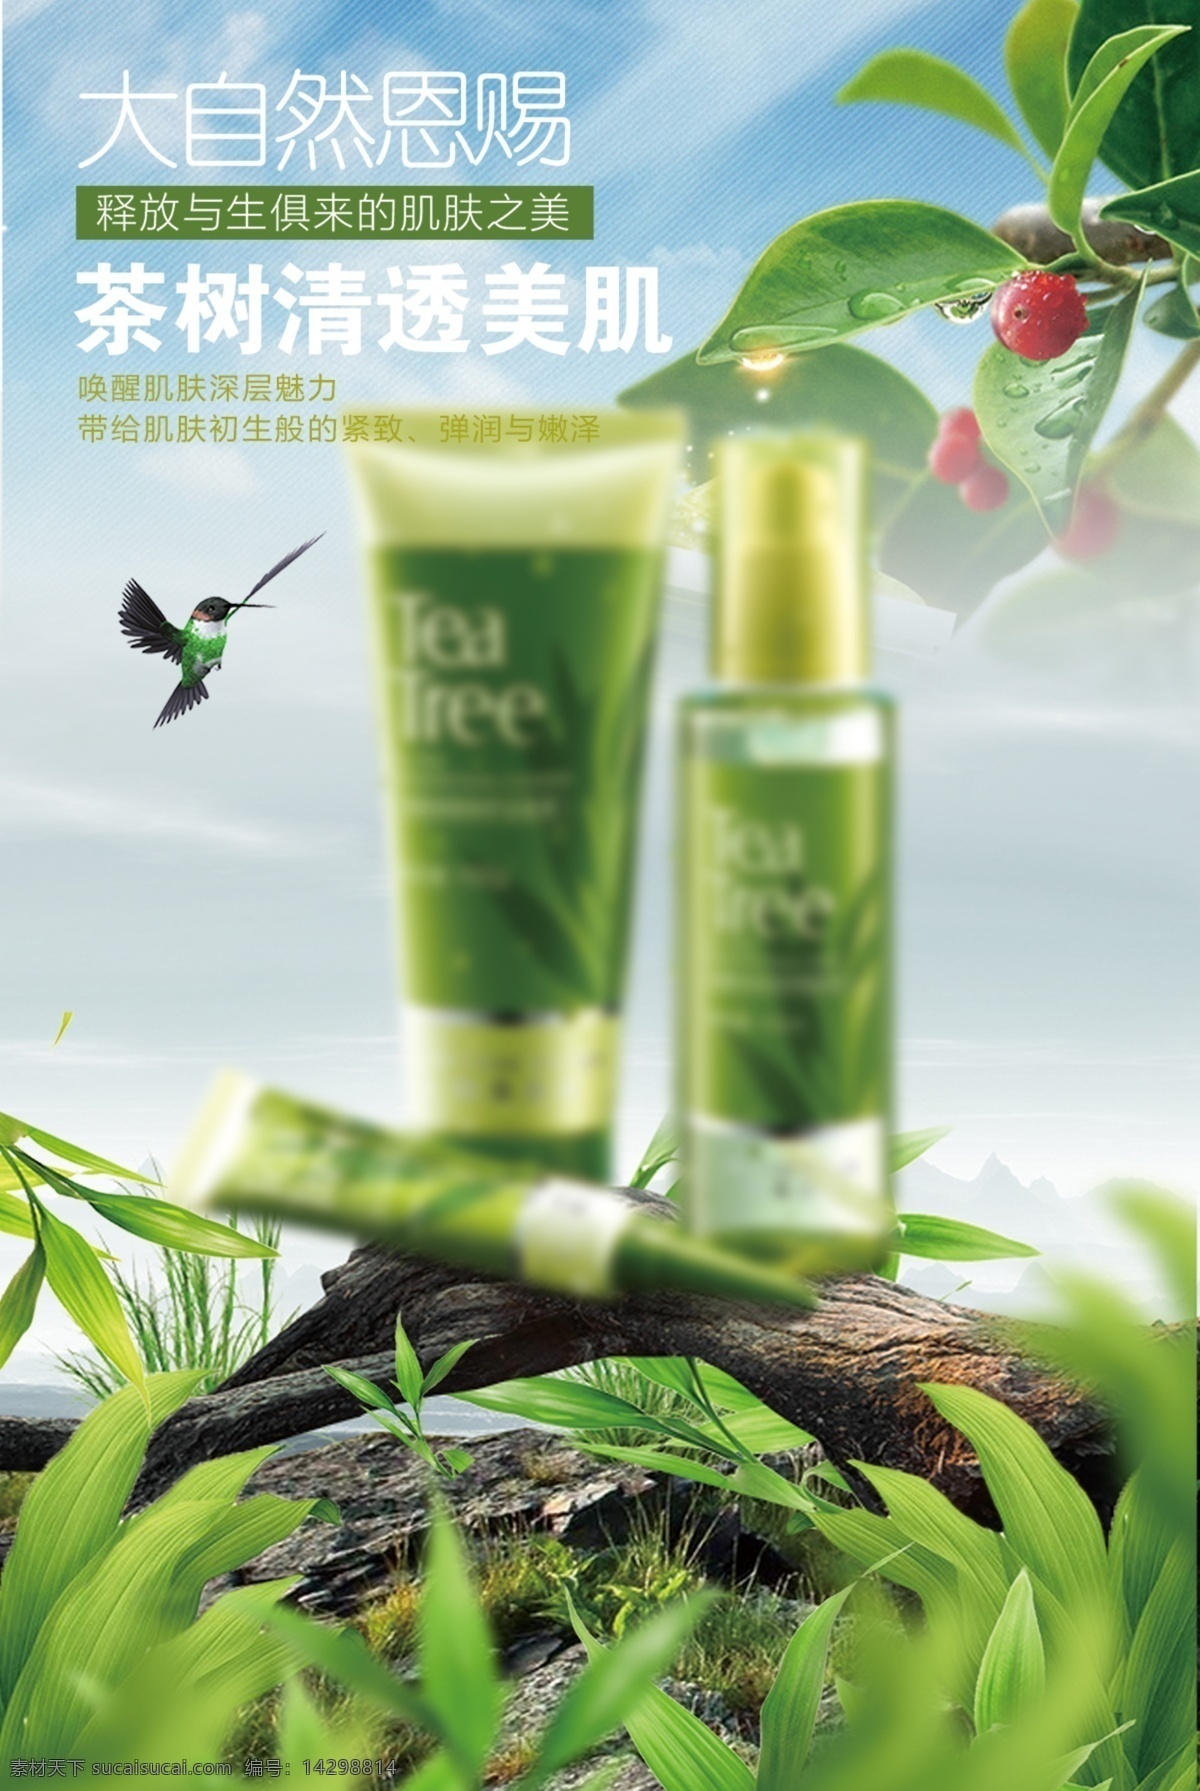 高端 绿色 自然 创意 化妆品 高端化妆品 分层